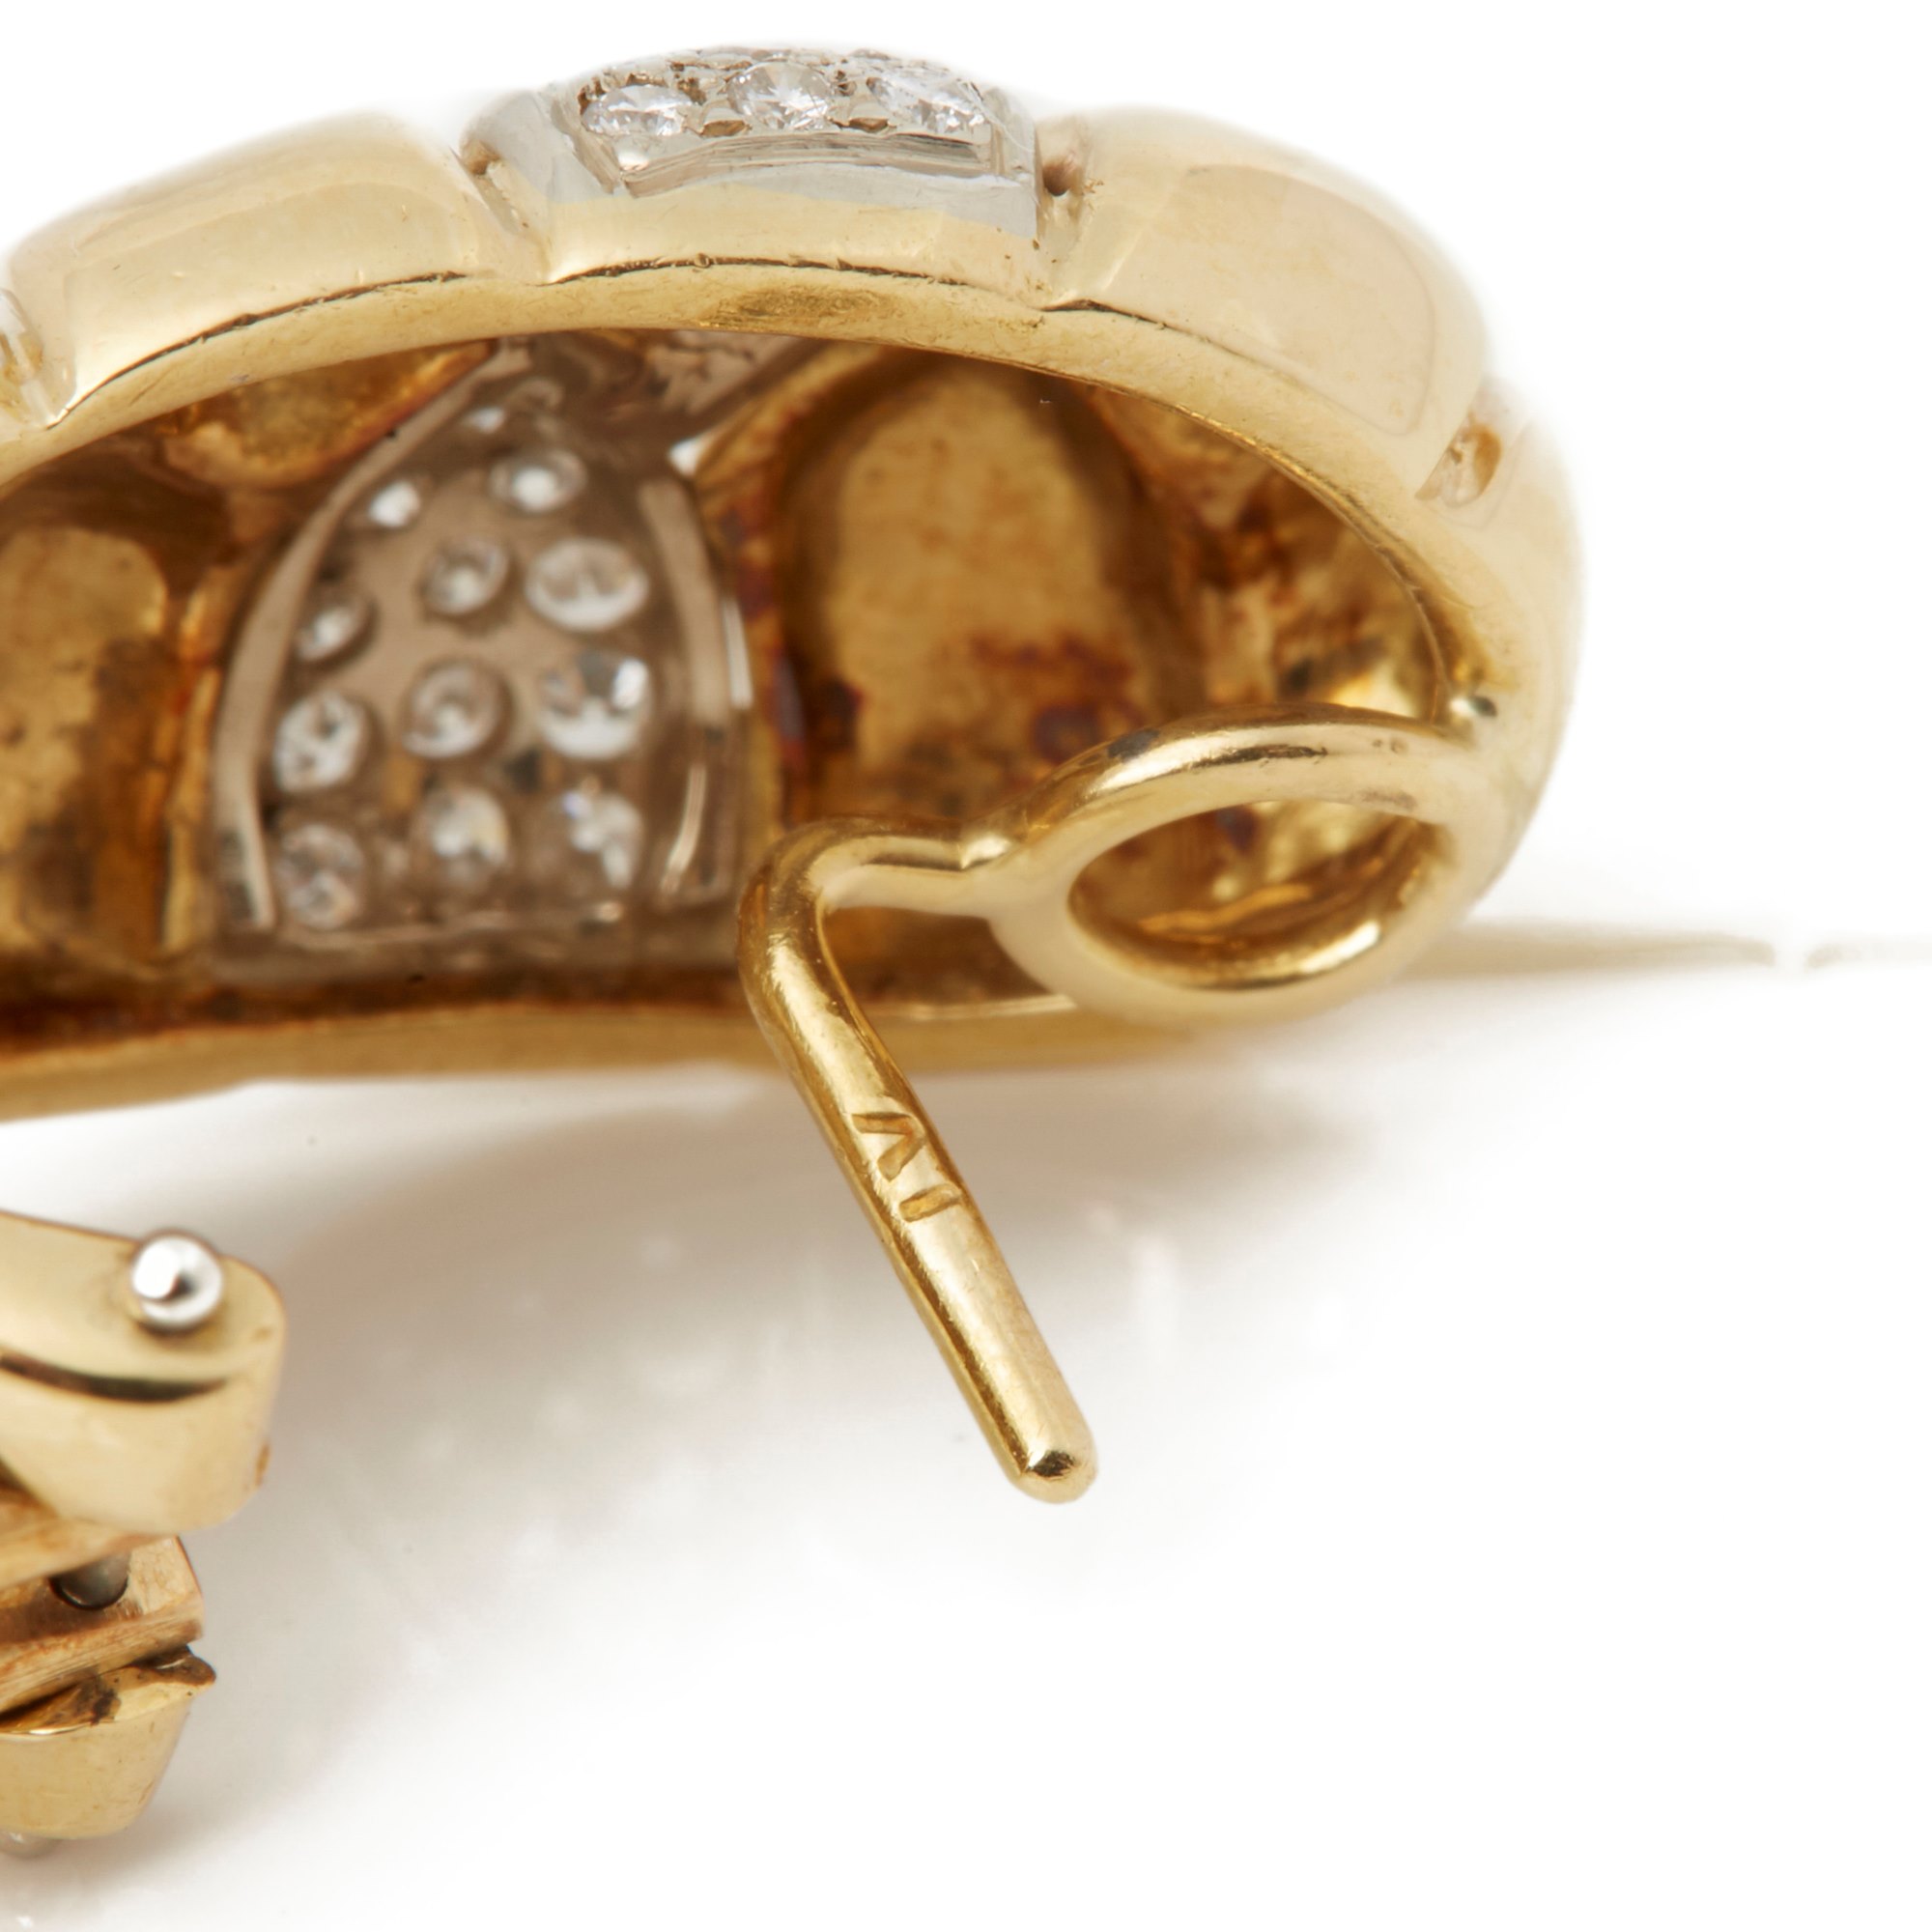 Cartier 18k Yellow Gold Diamond Vintage Earrings